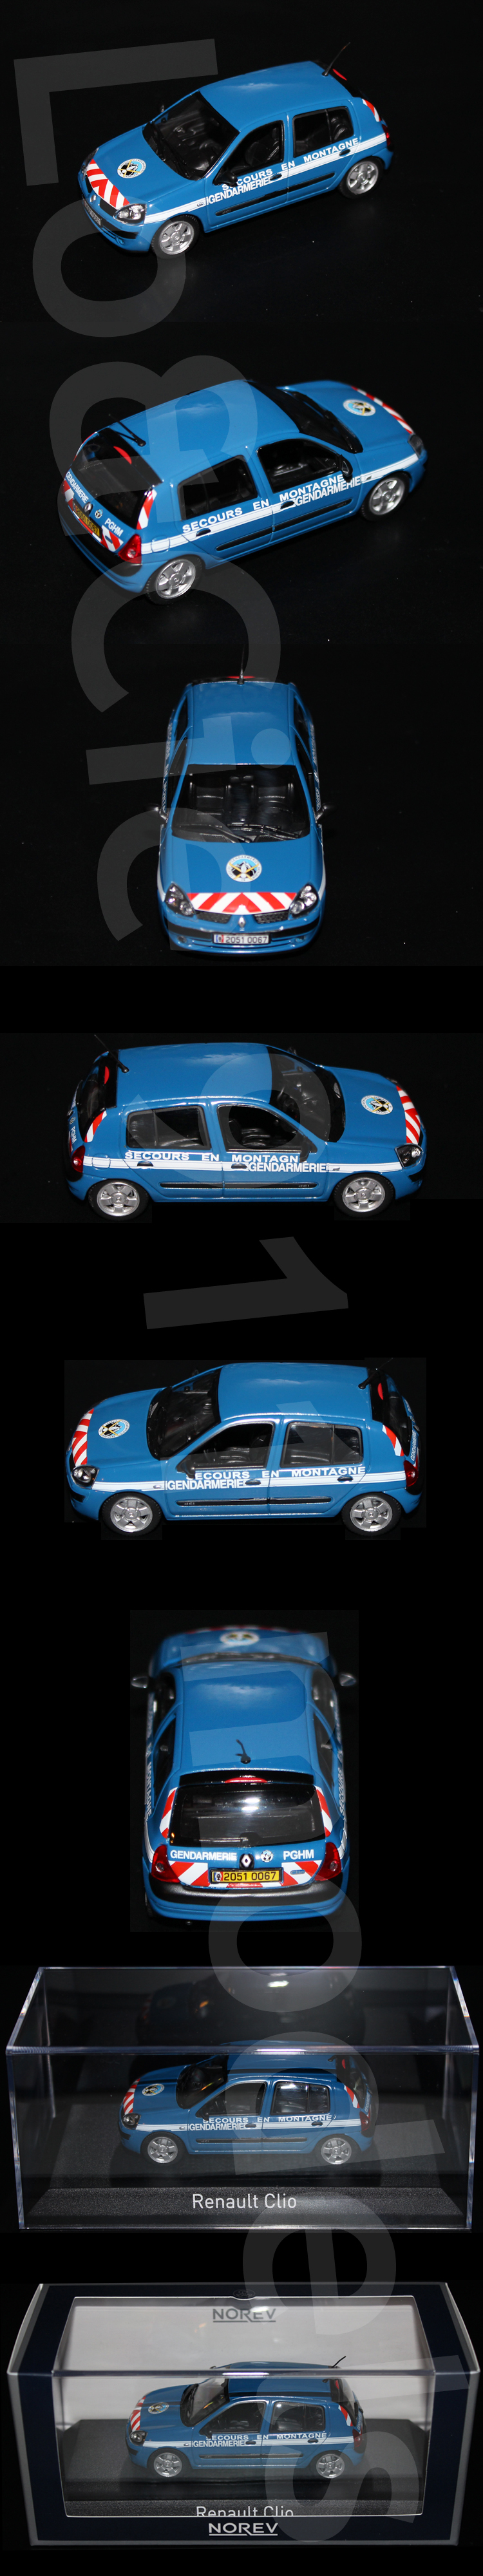 NOREV Renault Clio 2 Gendarmerie nationale PGHM - Visitez notre site : www.911-models.com